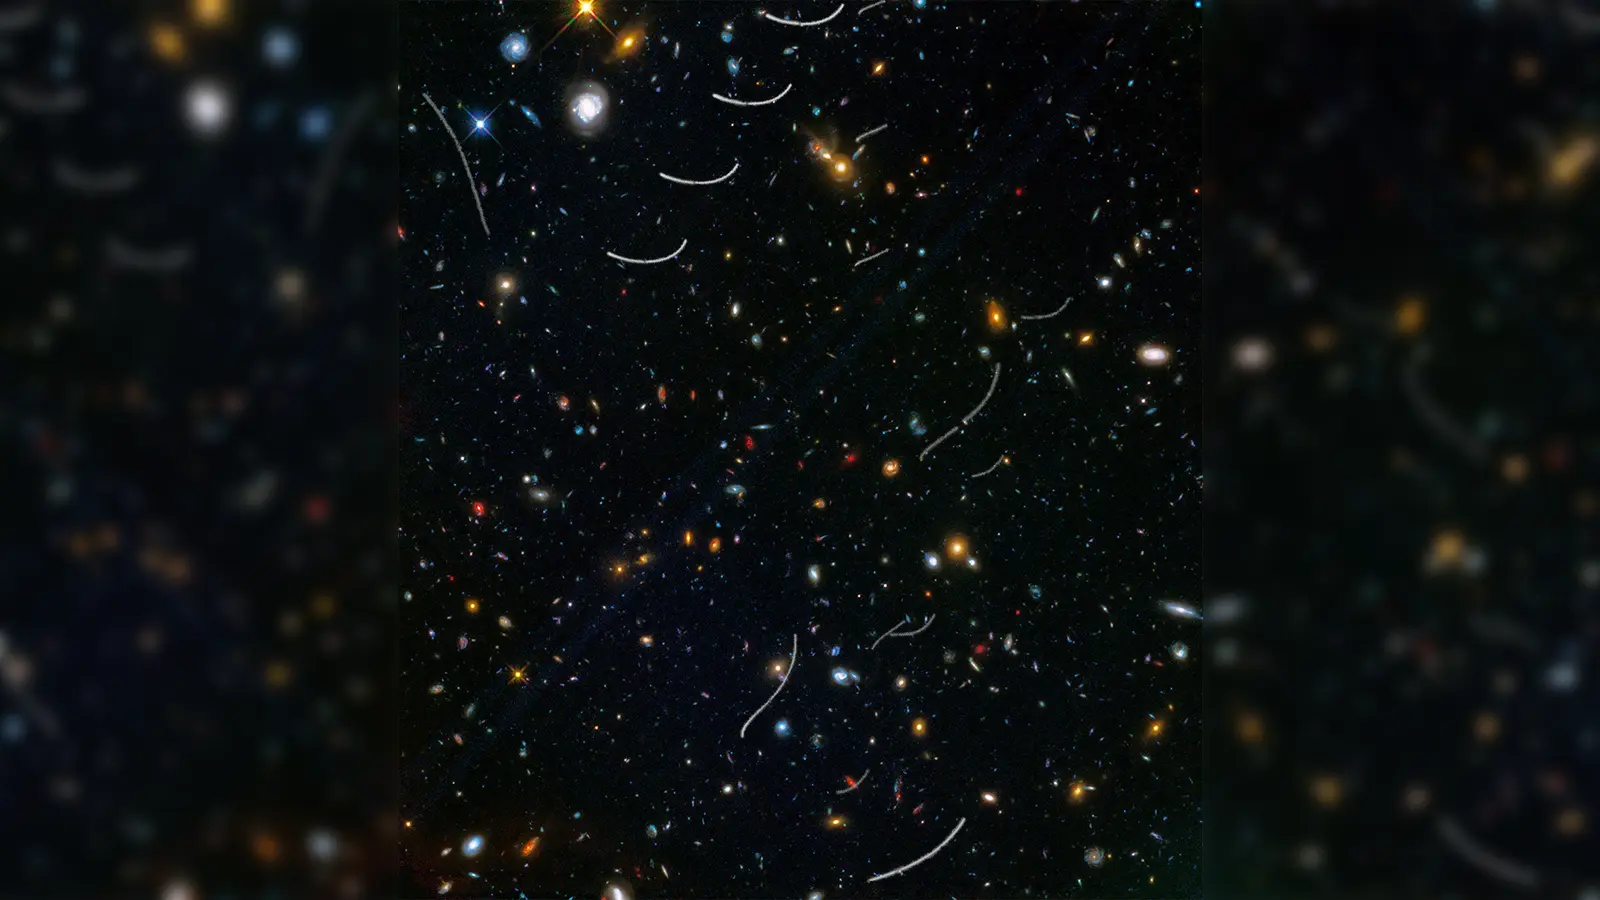 Für das Bild wurden Aufnahmen des Weltraumteleskops Hubble übereinander gelegt. Es zeigt die Bahnen mehrerer Asteroiden (weiße Linien). (Foto: NASA, ESA, and B. Sunnquist and J. Mack (STScI)/Acknowledgment: NASA, ESA, and J. Lotz (STScI) and the HFF Team/dpa)